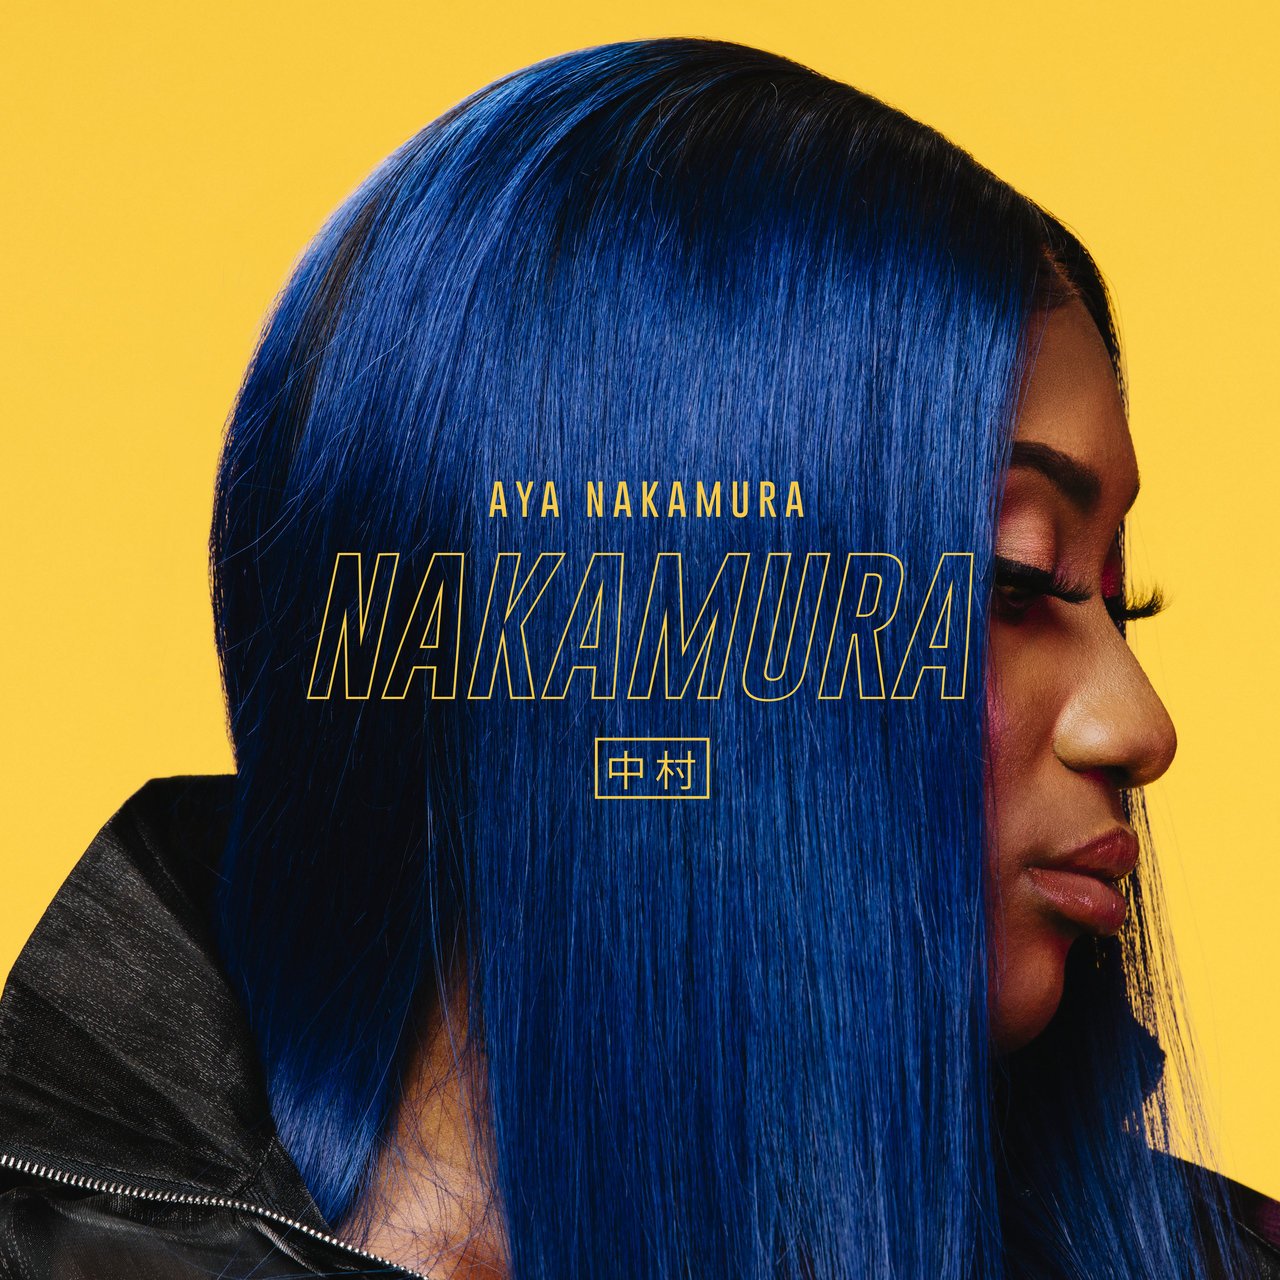 NAKAMURA — Aya Nakamura | Last.fm